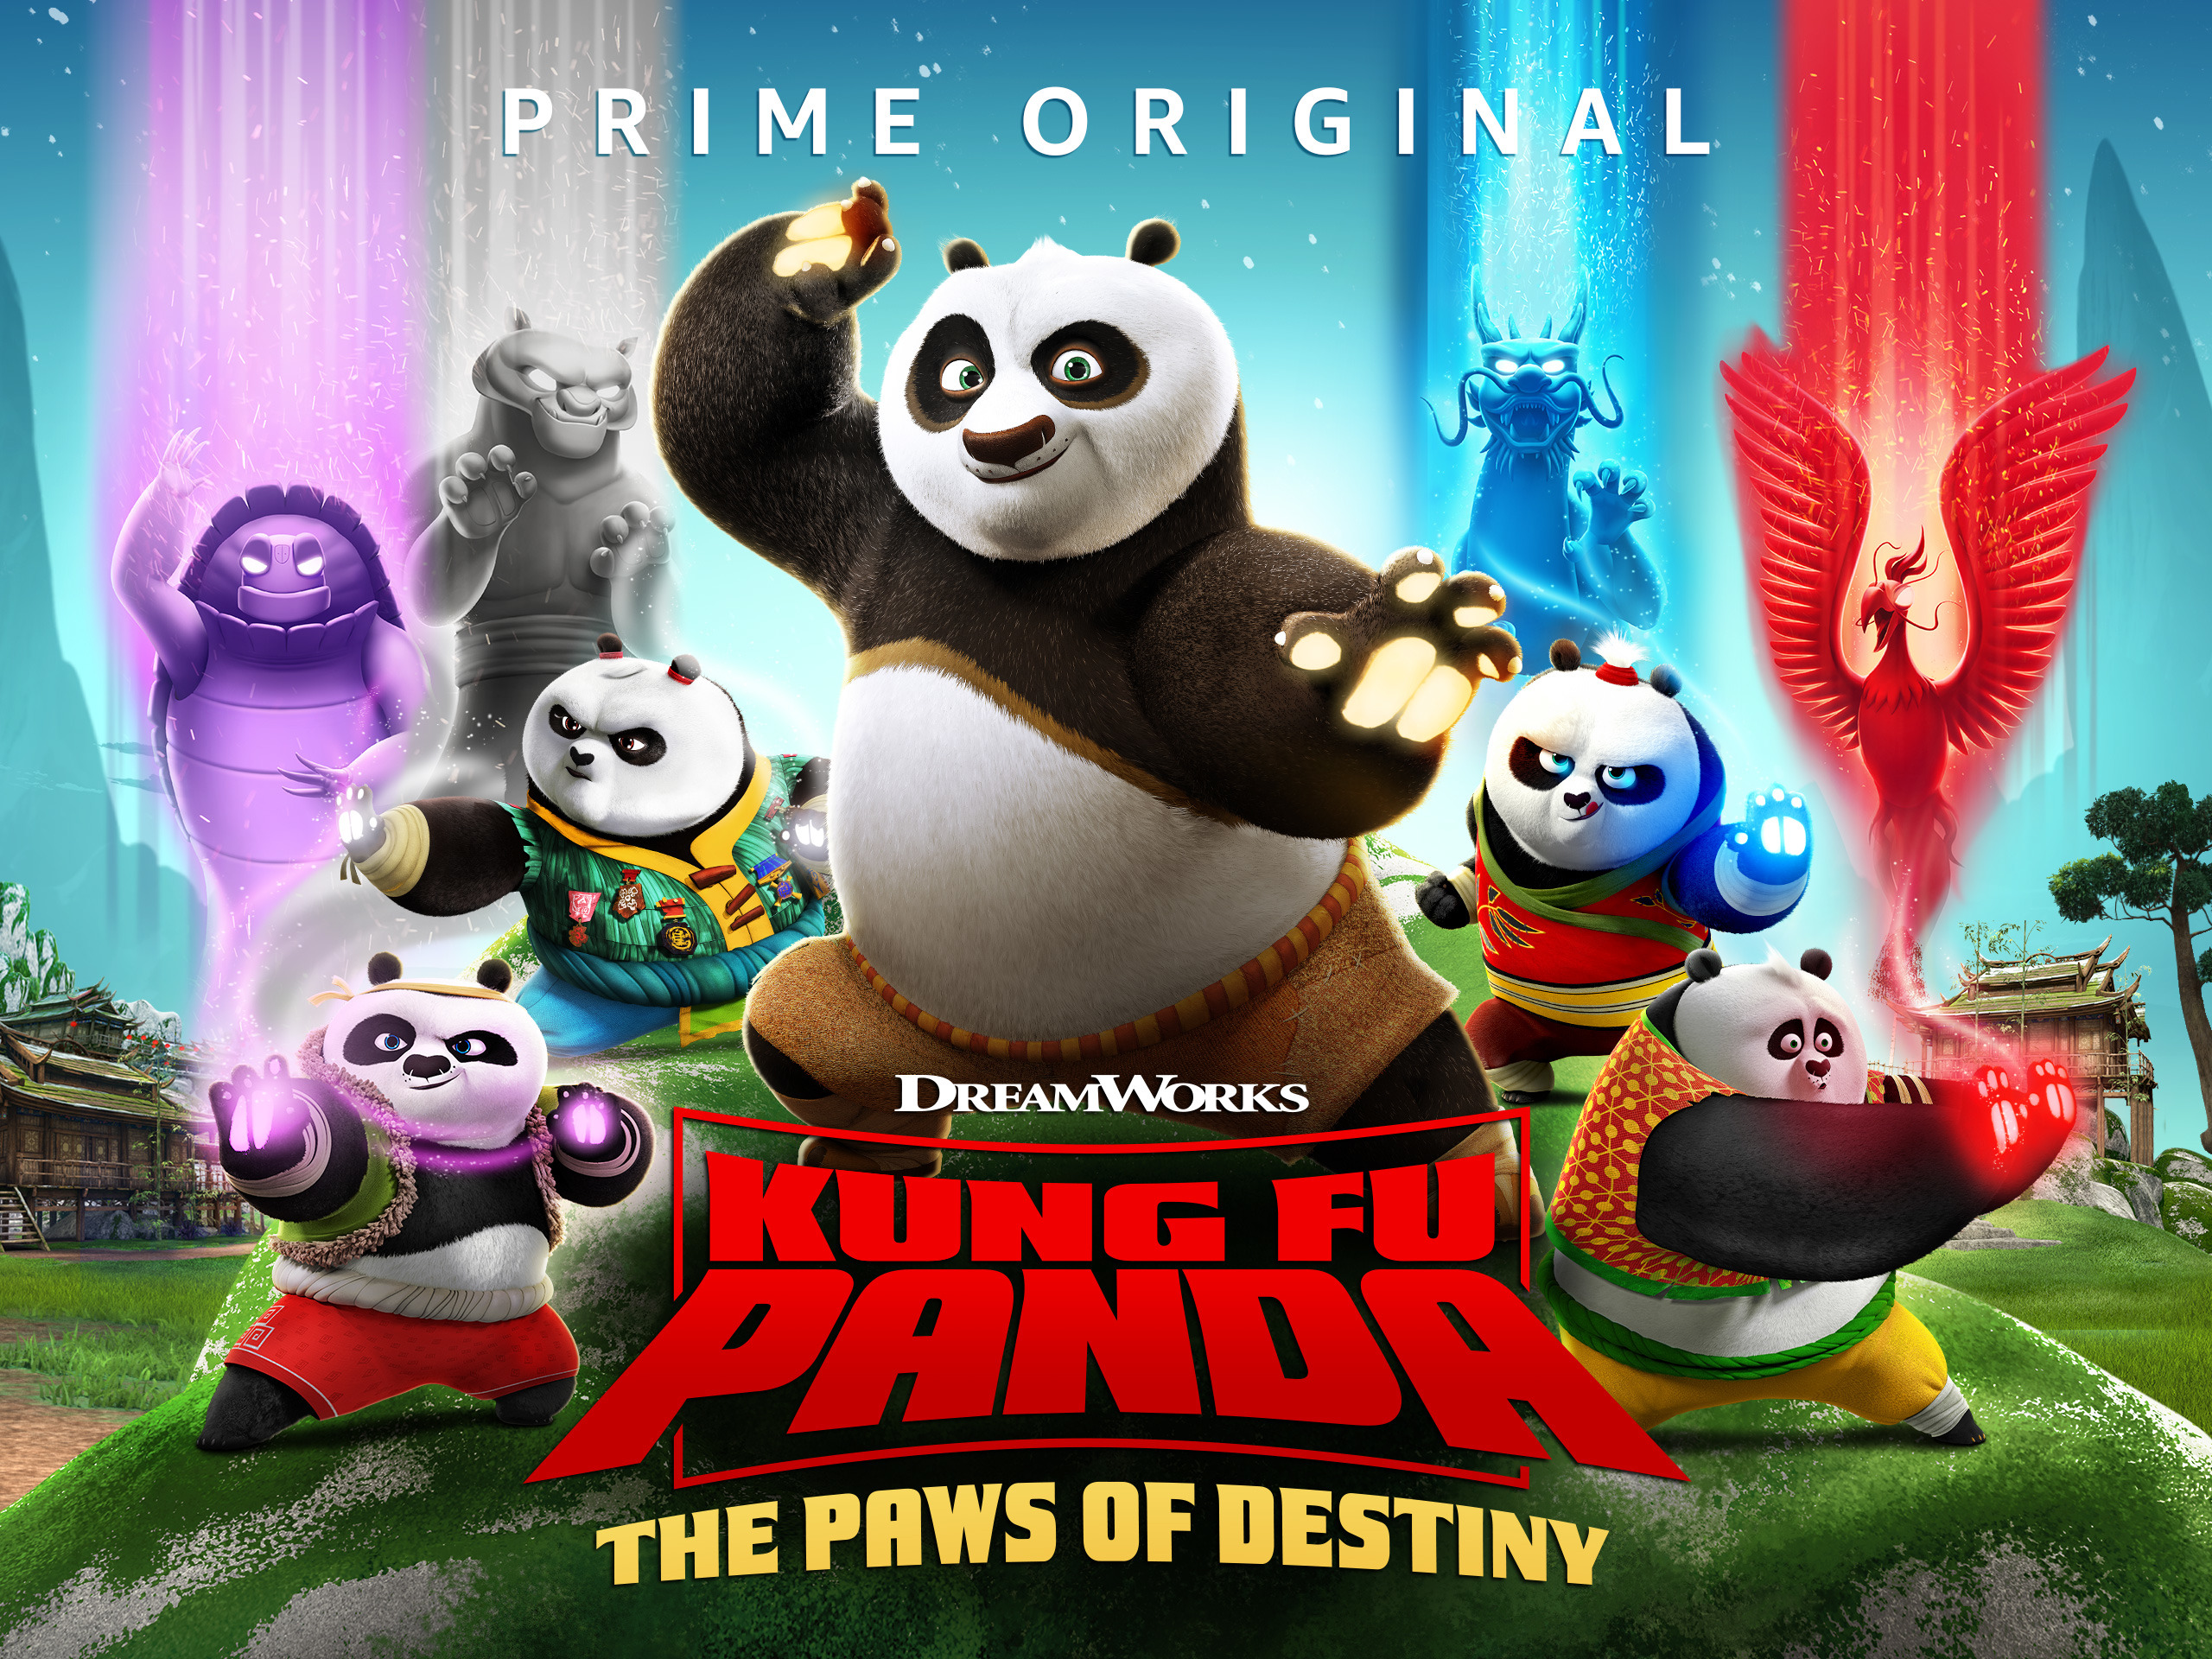 功夫熊猫英文版 第4季《Kung Fu Panda》在线观看